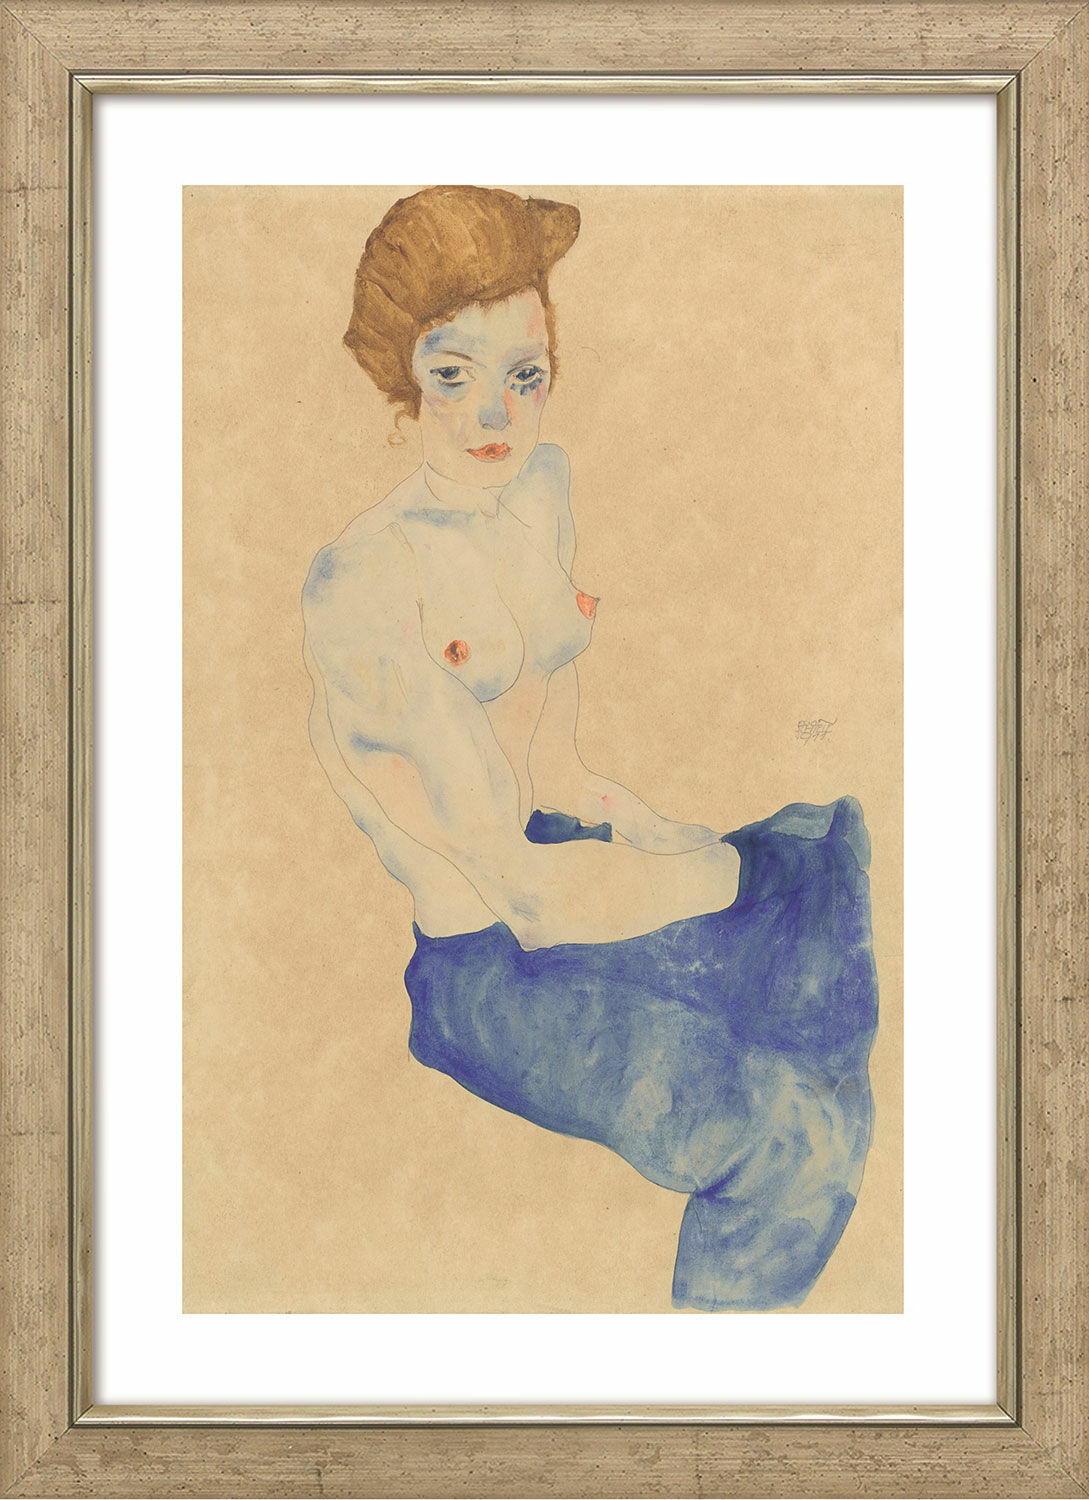 Tableau "Fille assise au torse nu et à la jupe bleu clair" (1911), encadré von Egon Schiele